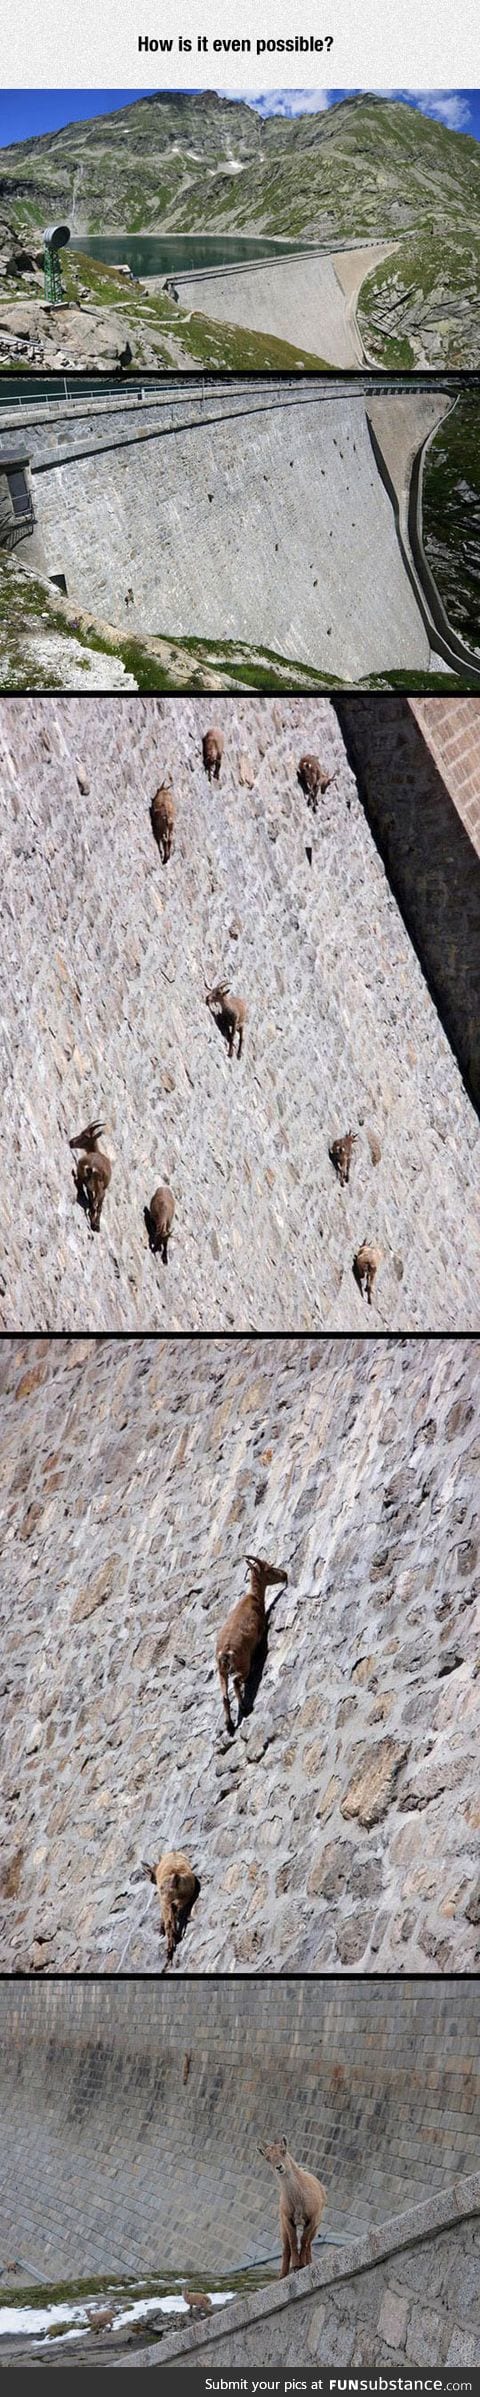 Goats defying gravity like a boss